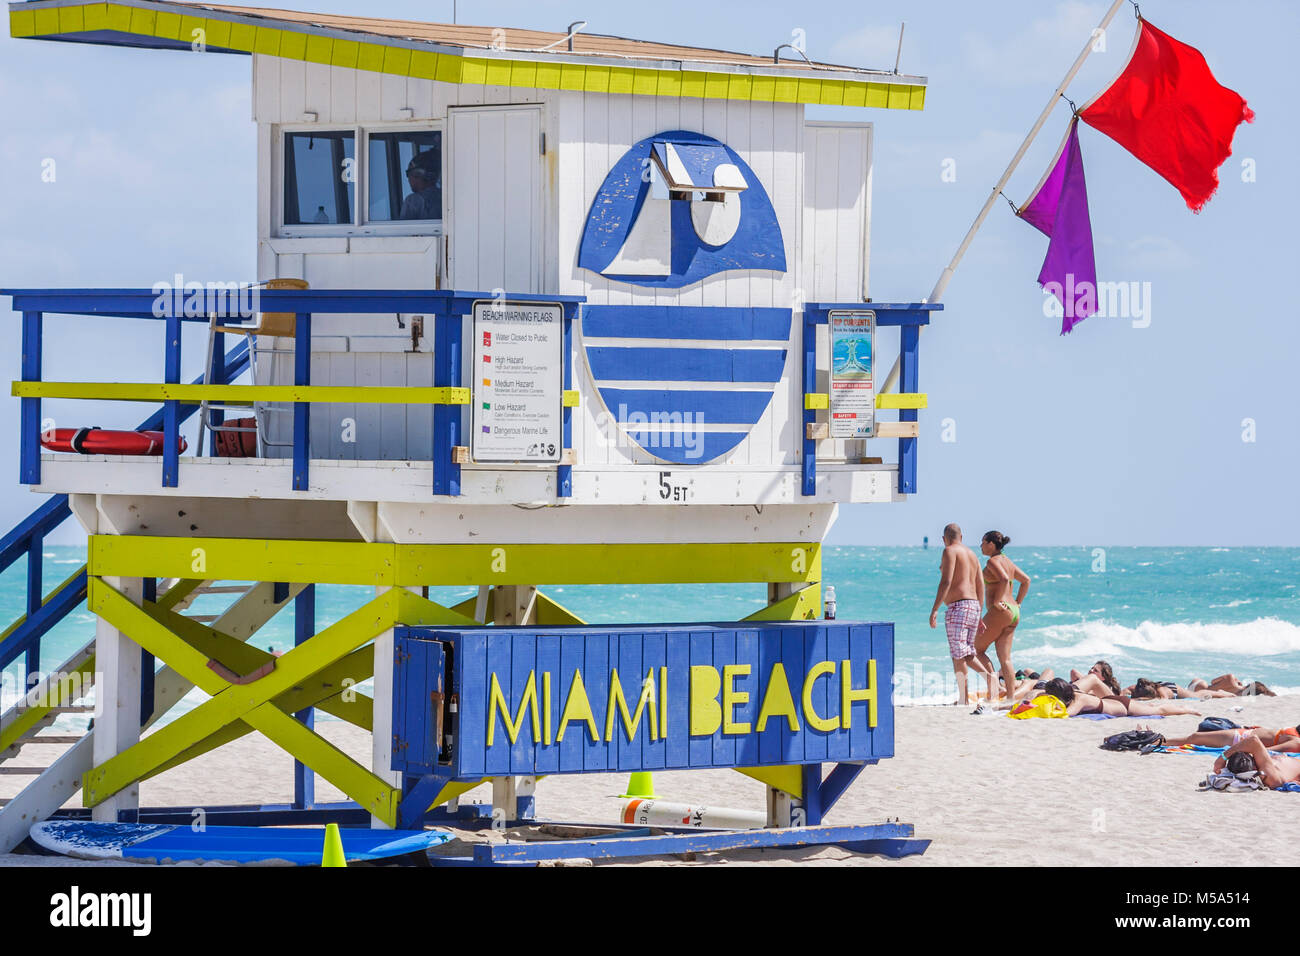 Miami Beach Florida, socorrista de agua del Océano Atlántico, seguridad, pareja, caminar, emergencia, azul, rojo, banderas de advertencia, vida marina peligrosa, alta surf, fuerte oc Foto de stock